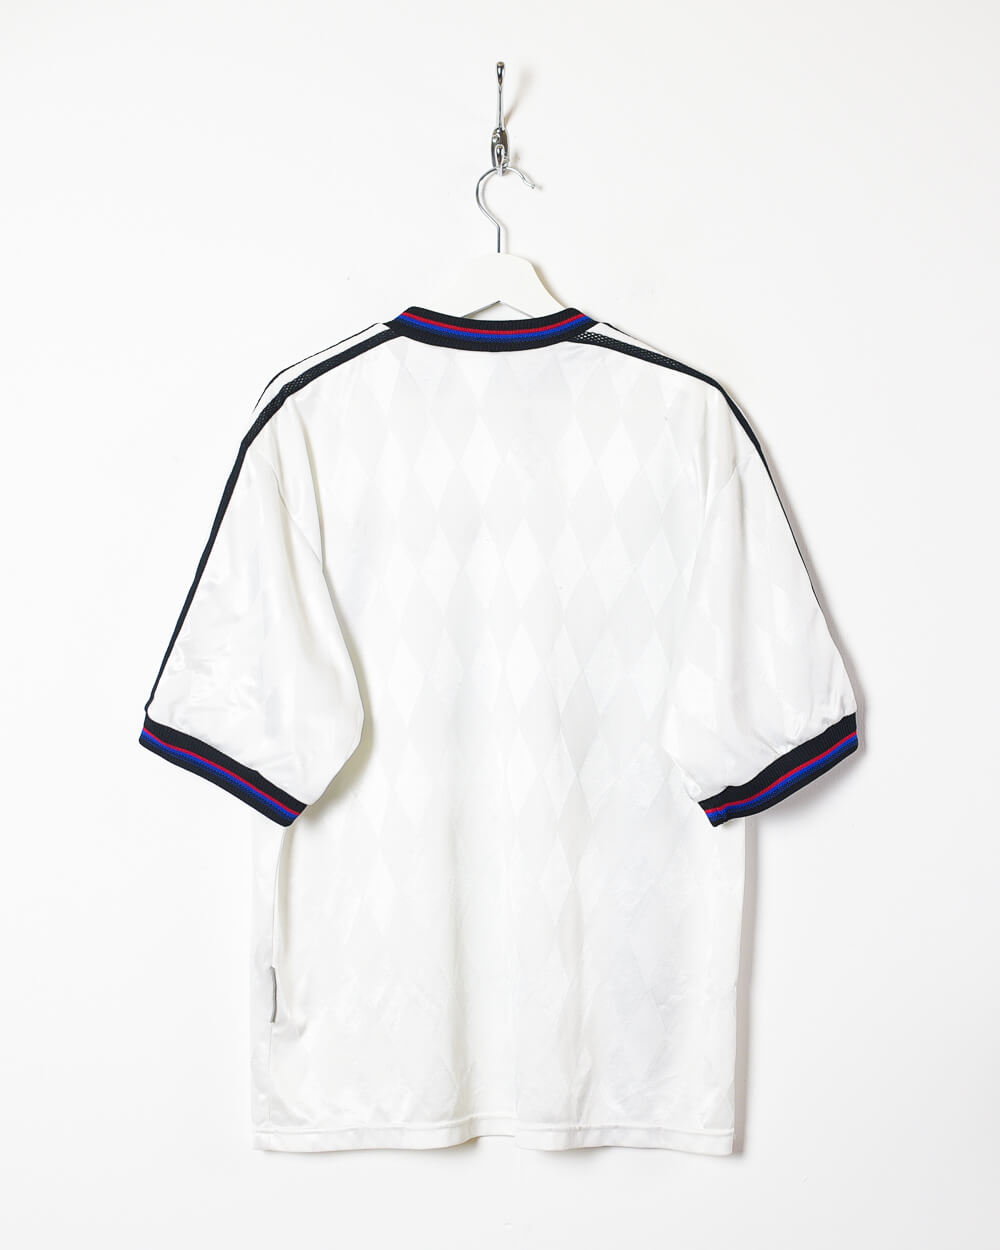 White Adidas Bayern Munich 1995/97 Away Football Shirt - Large